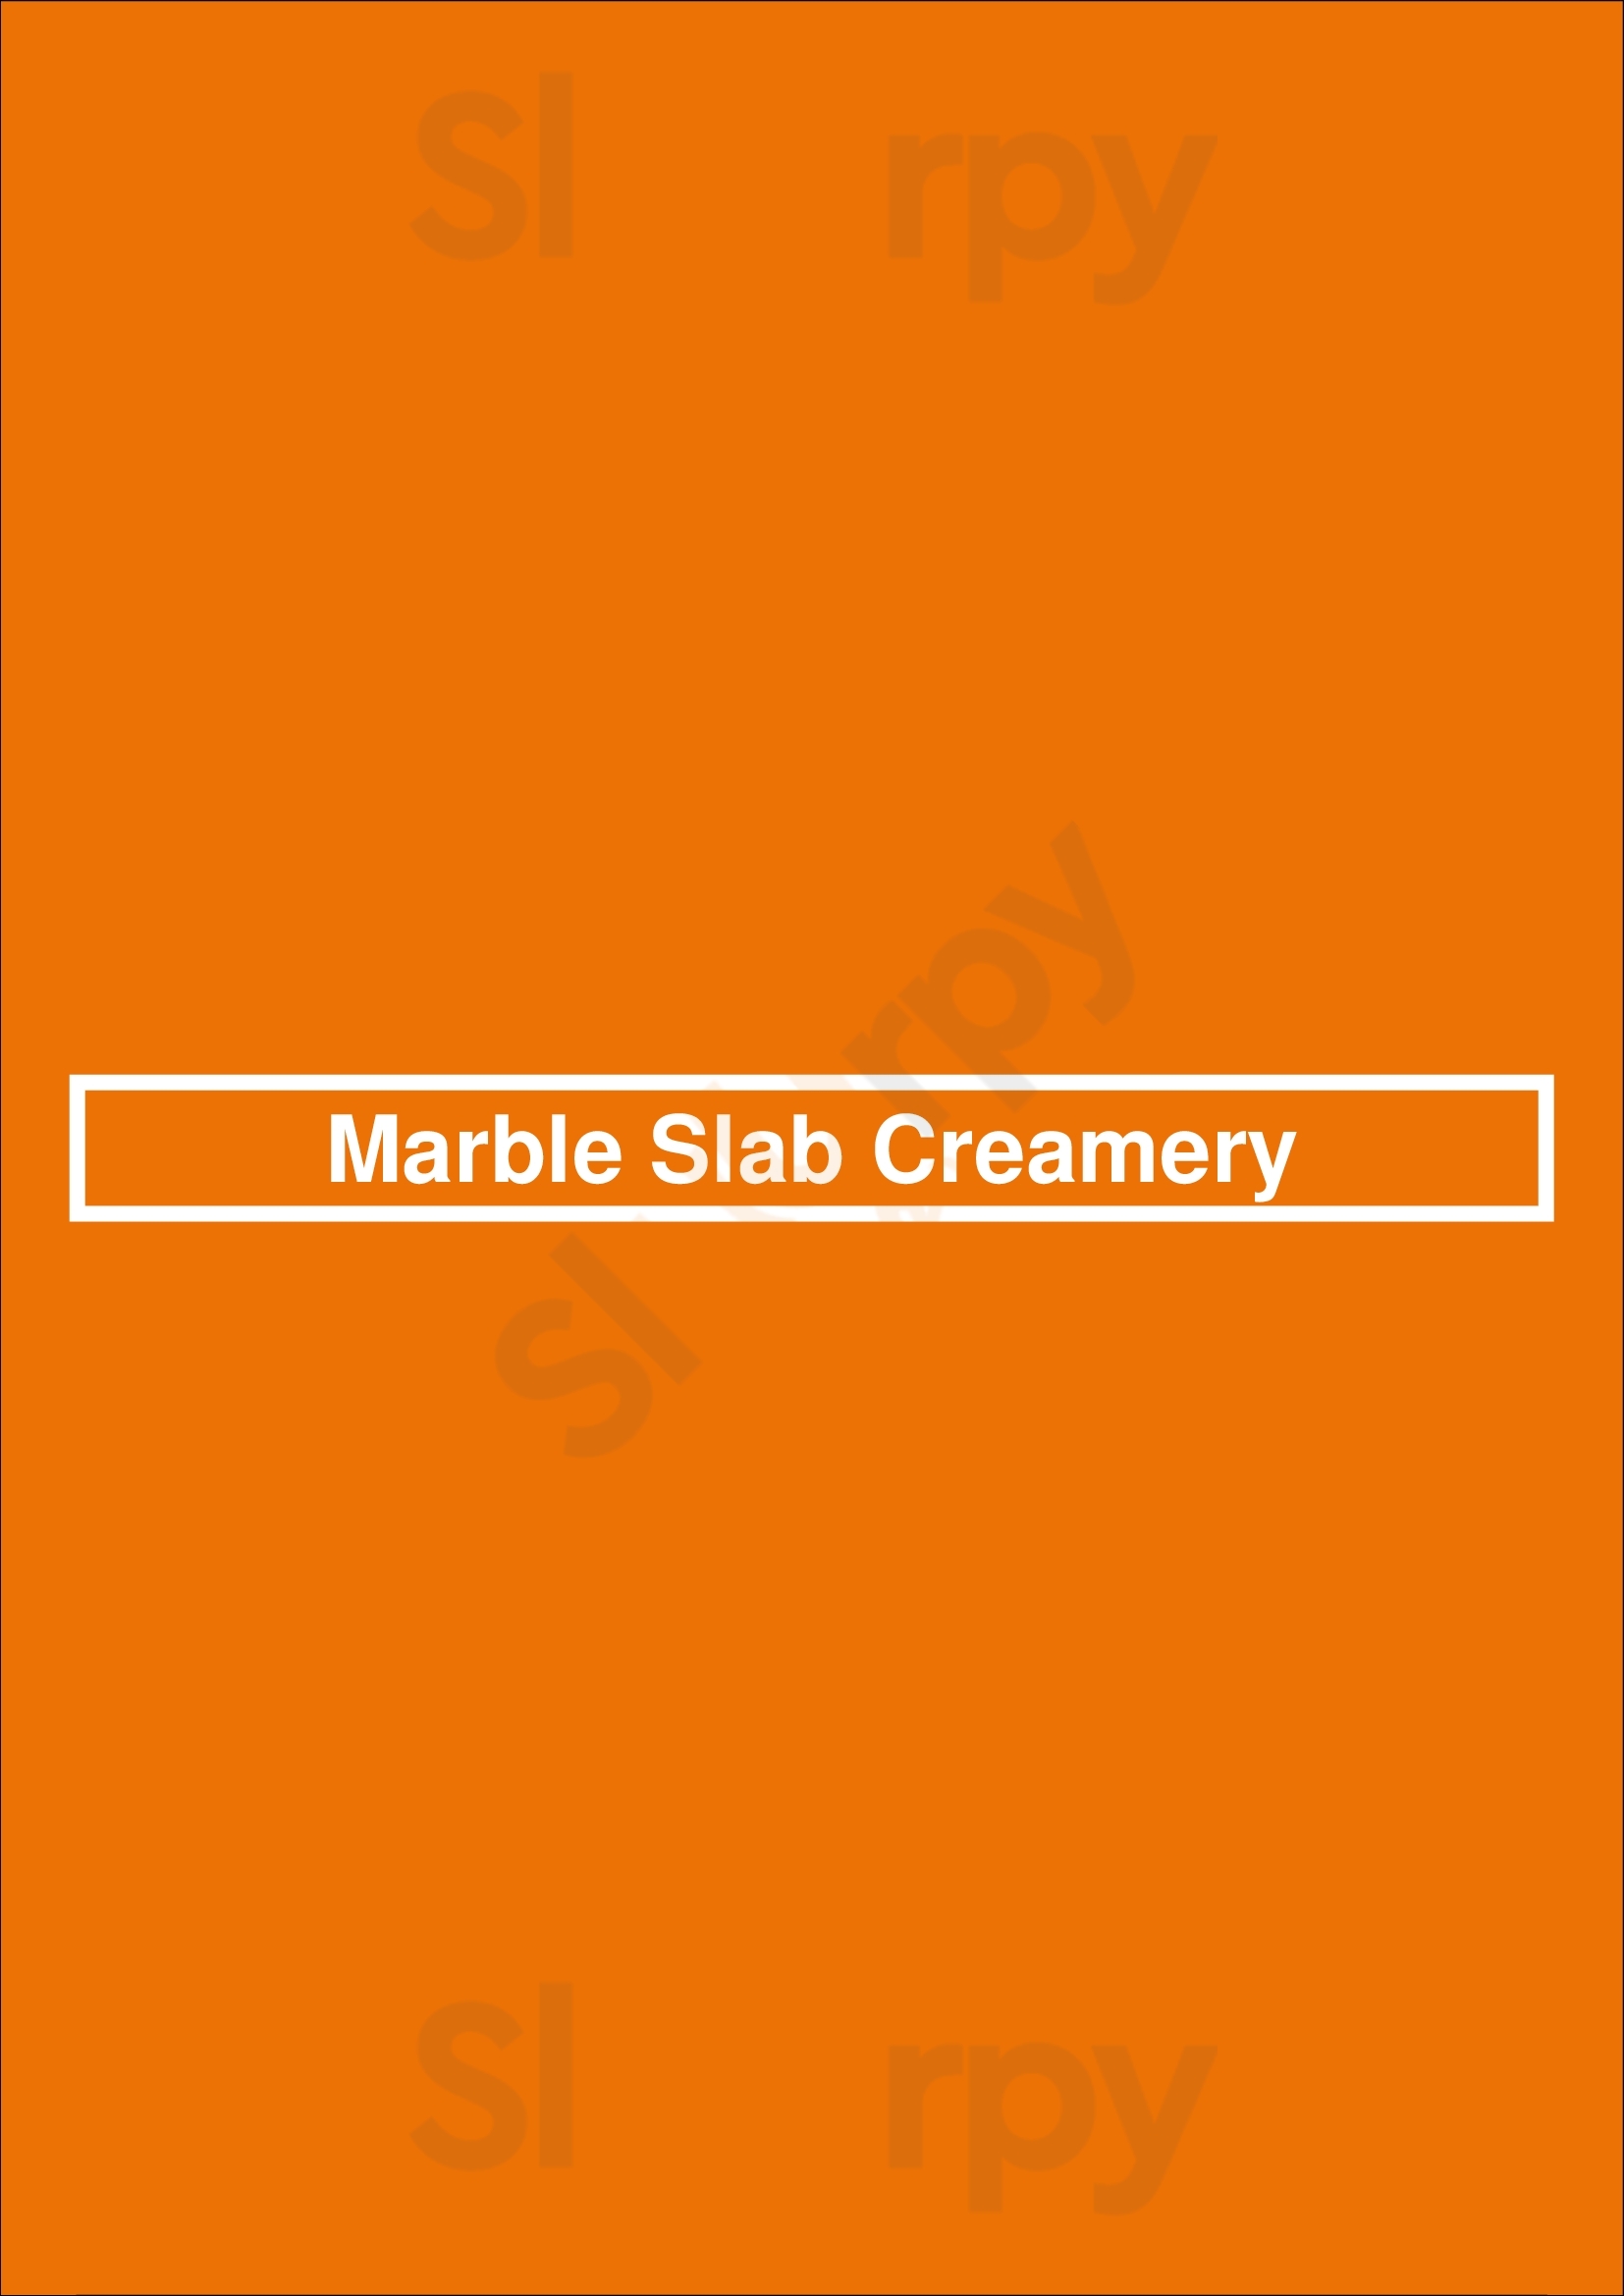 Marble Slab Creamery Edmonton Menu - 1